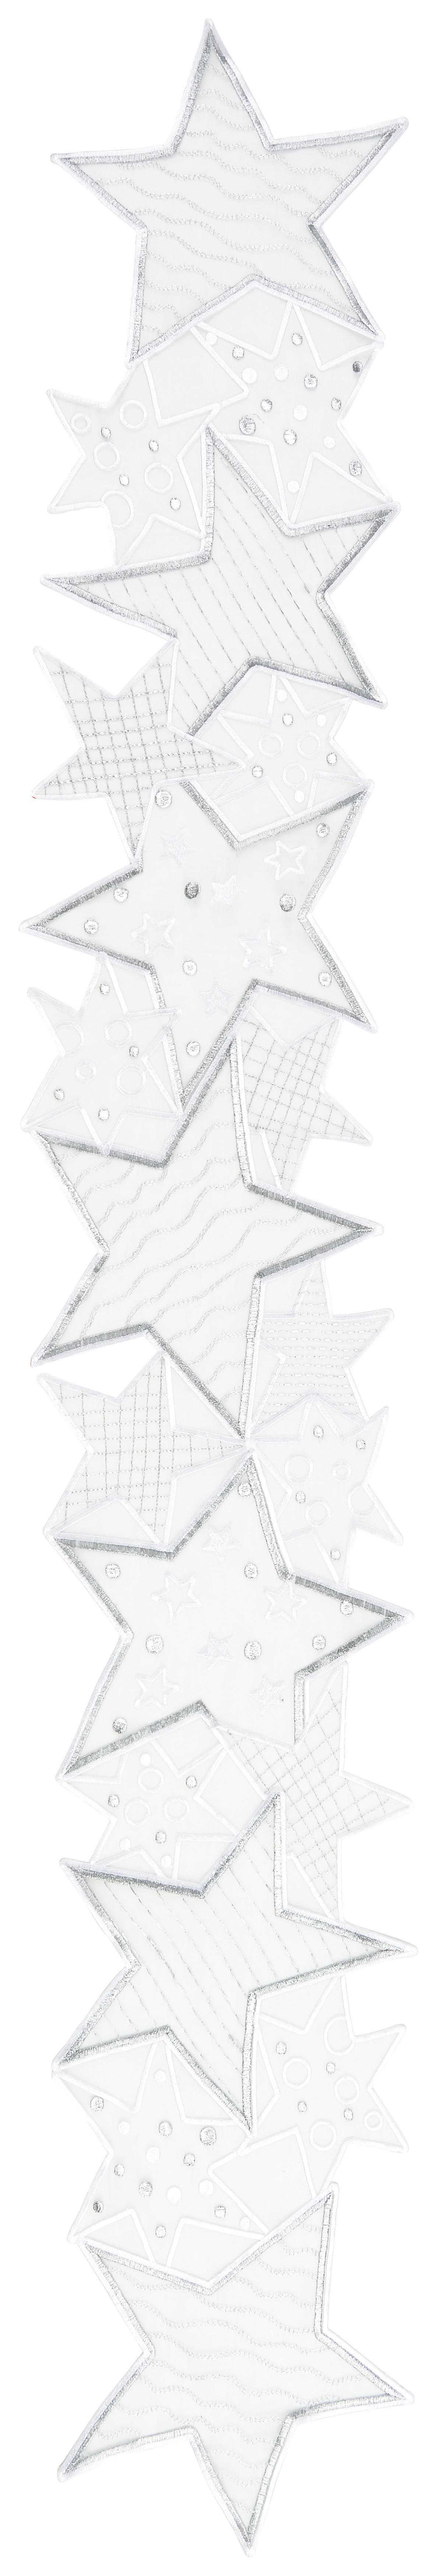 TISCHLÄUFER Star 20/140 cm  - Weiß, KONVENTIONELL, Textil (20/140cm) - X-Mas